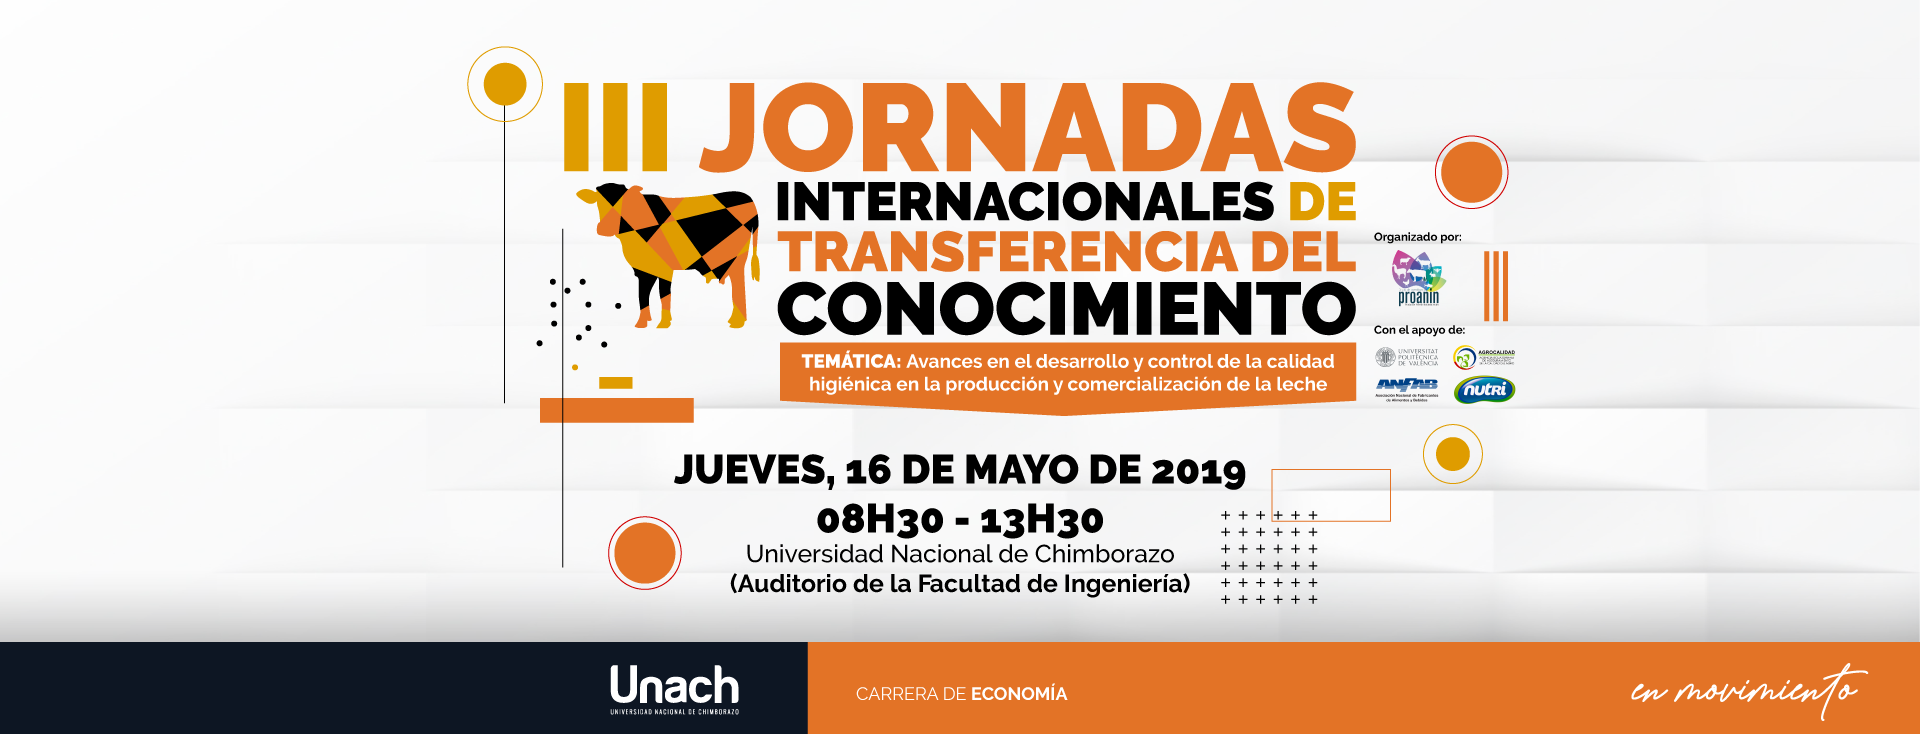 III JORNADAS INTERNACIONALES DE TRANSFERENCIA DE CONOCIMIENTO